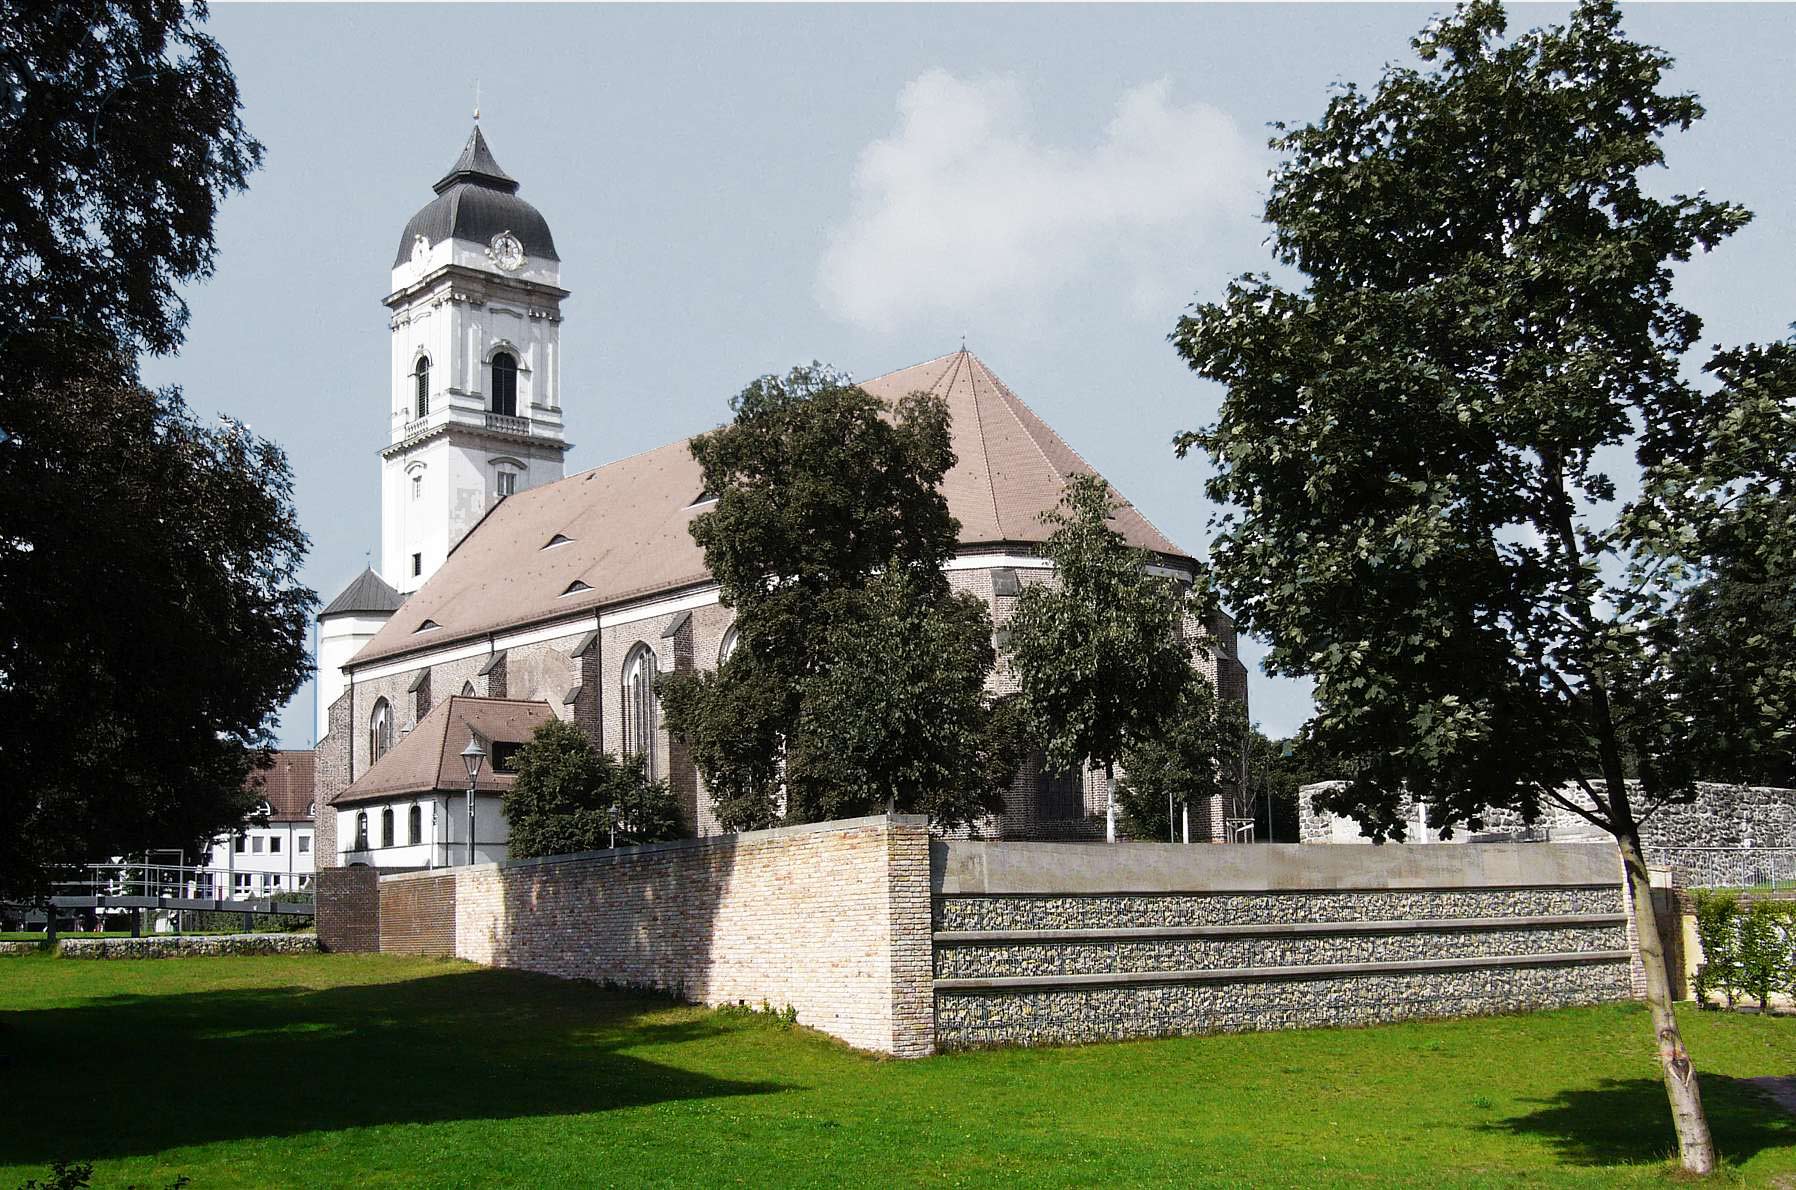 Denkmalgeschützte Kirche in Fürstenwalde mit Ummauerung, Bäumen und Wiese